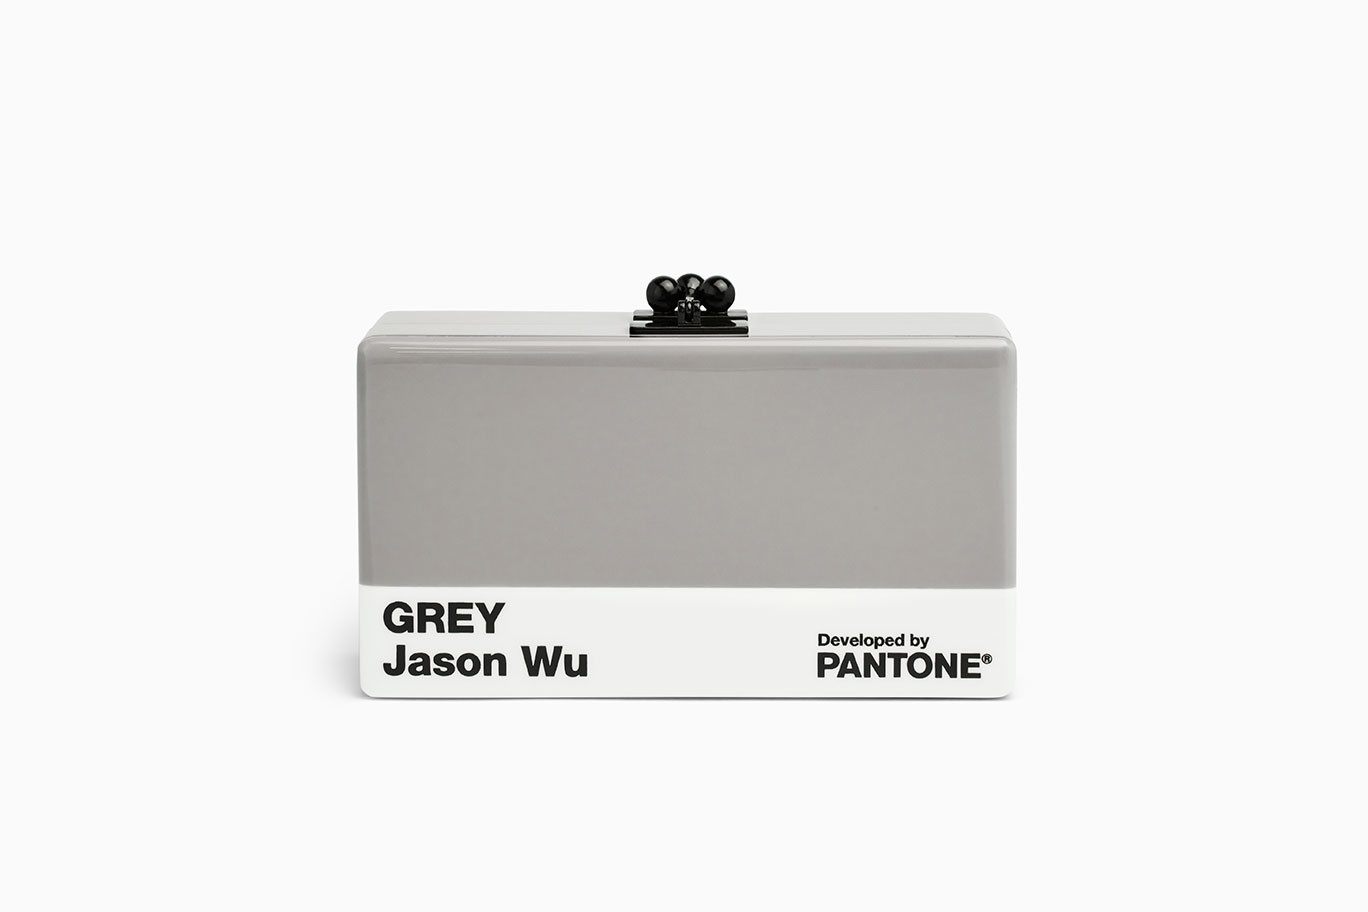 Grey Jason Wu